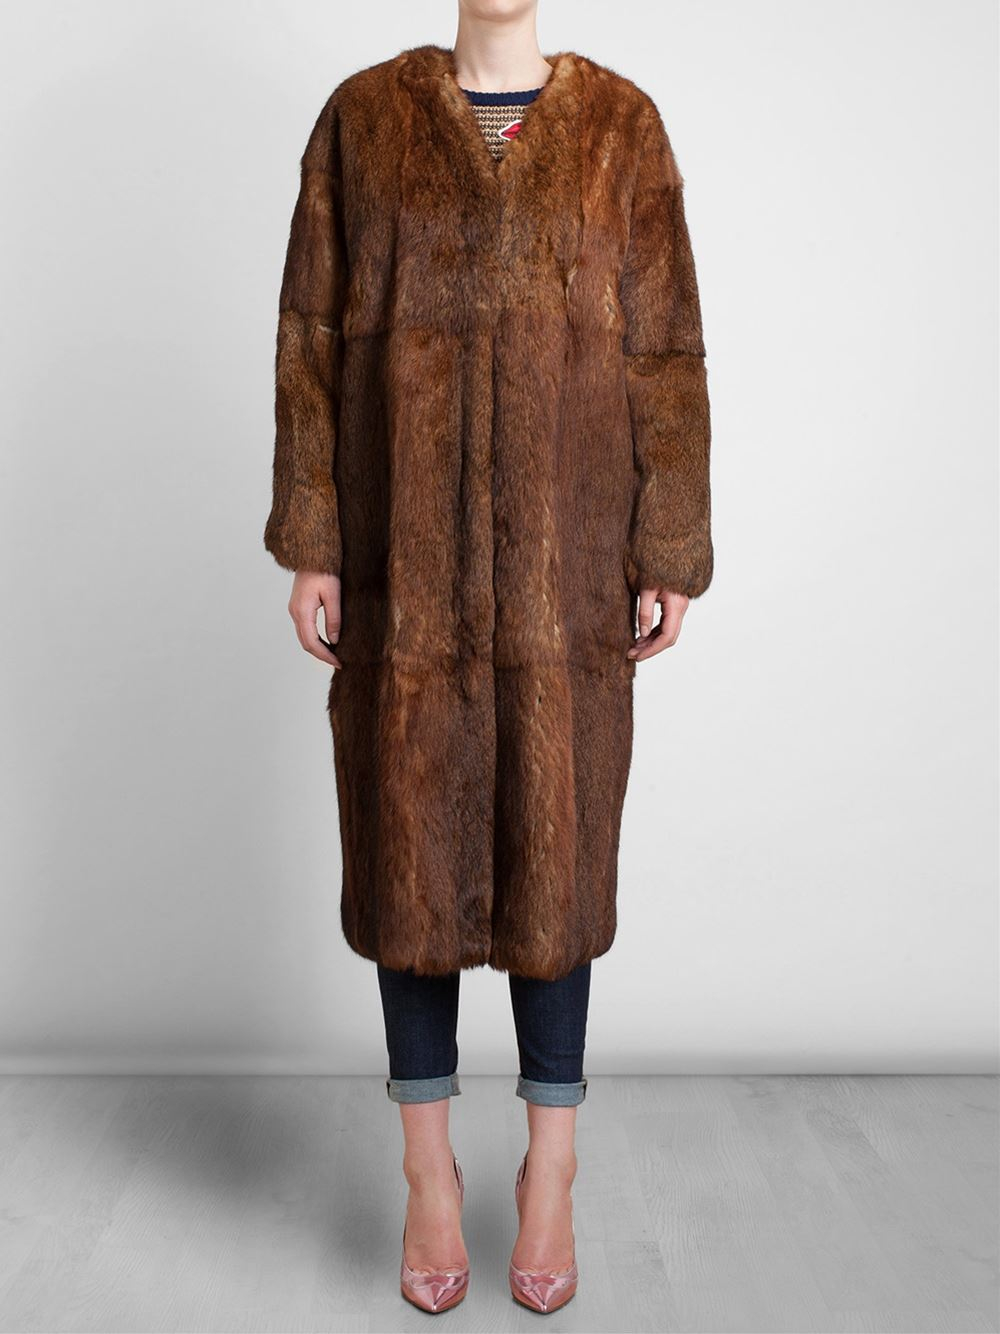 Msgm Long Rabbit Fur Coat in Brown | Lyst